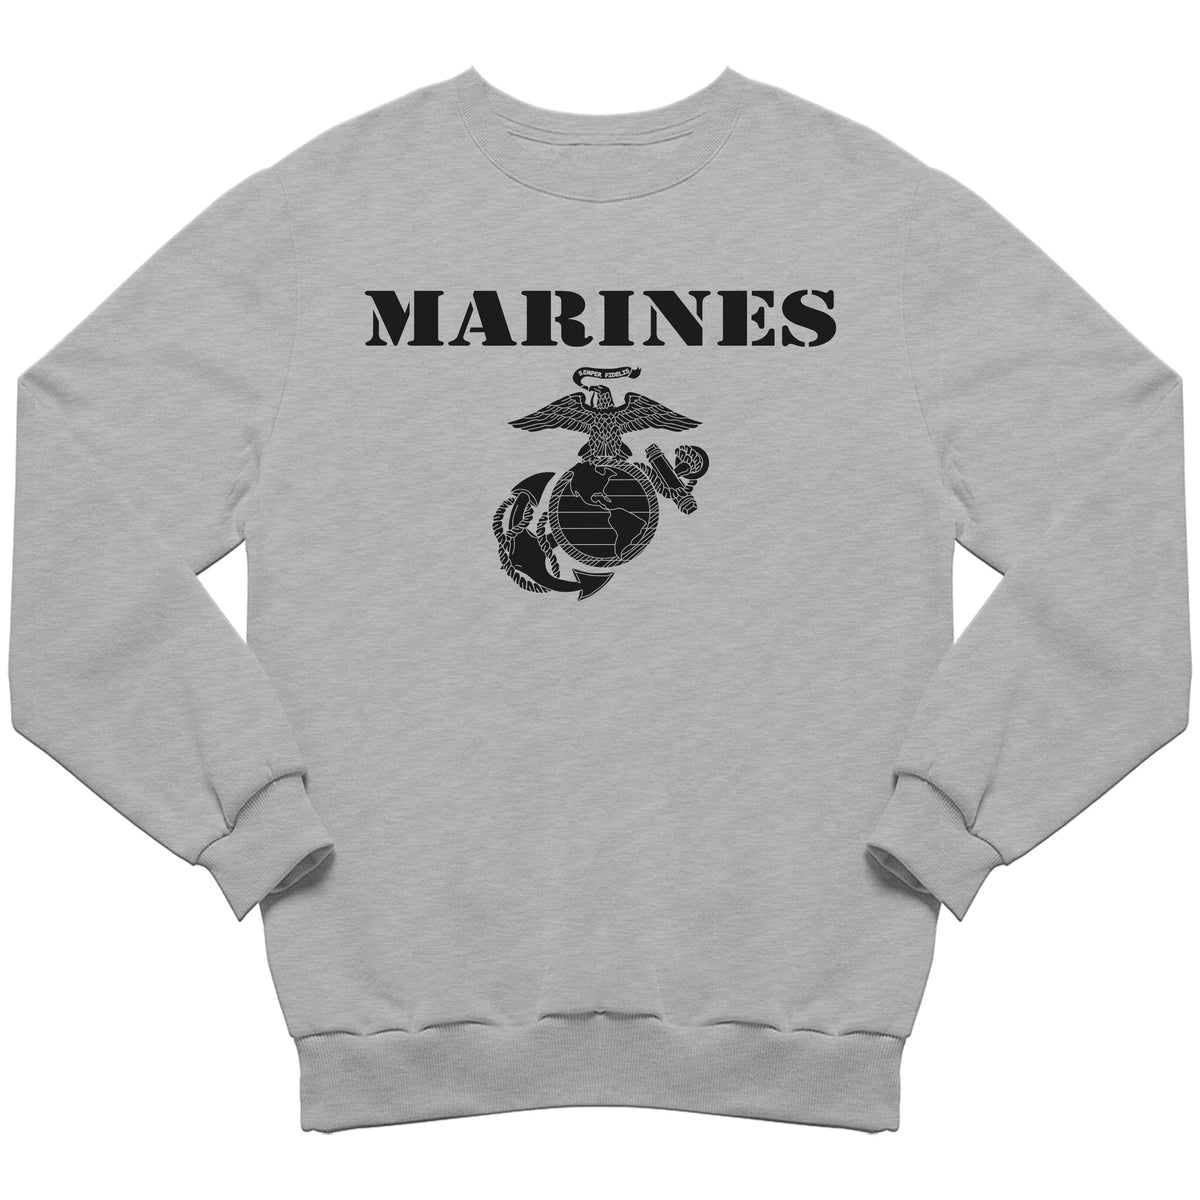 Vintage Marines Sweatshirt